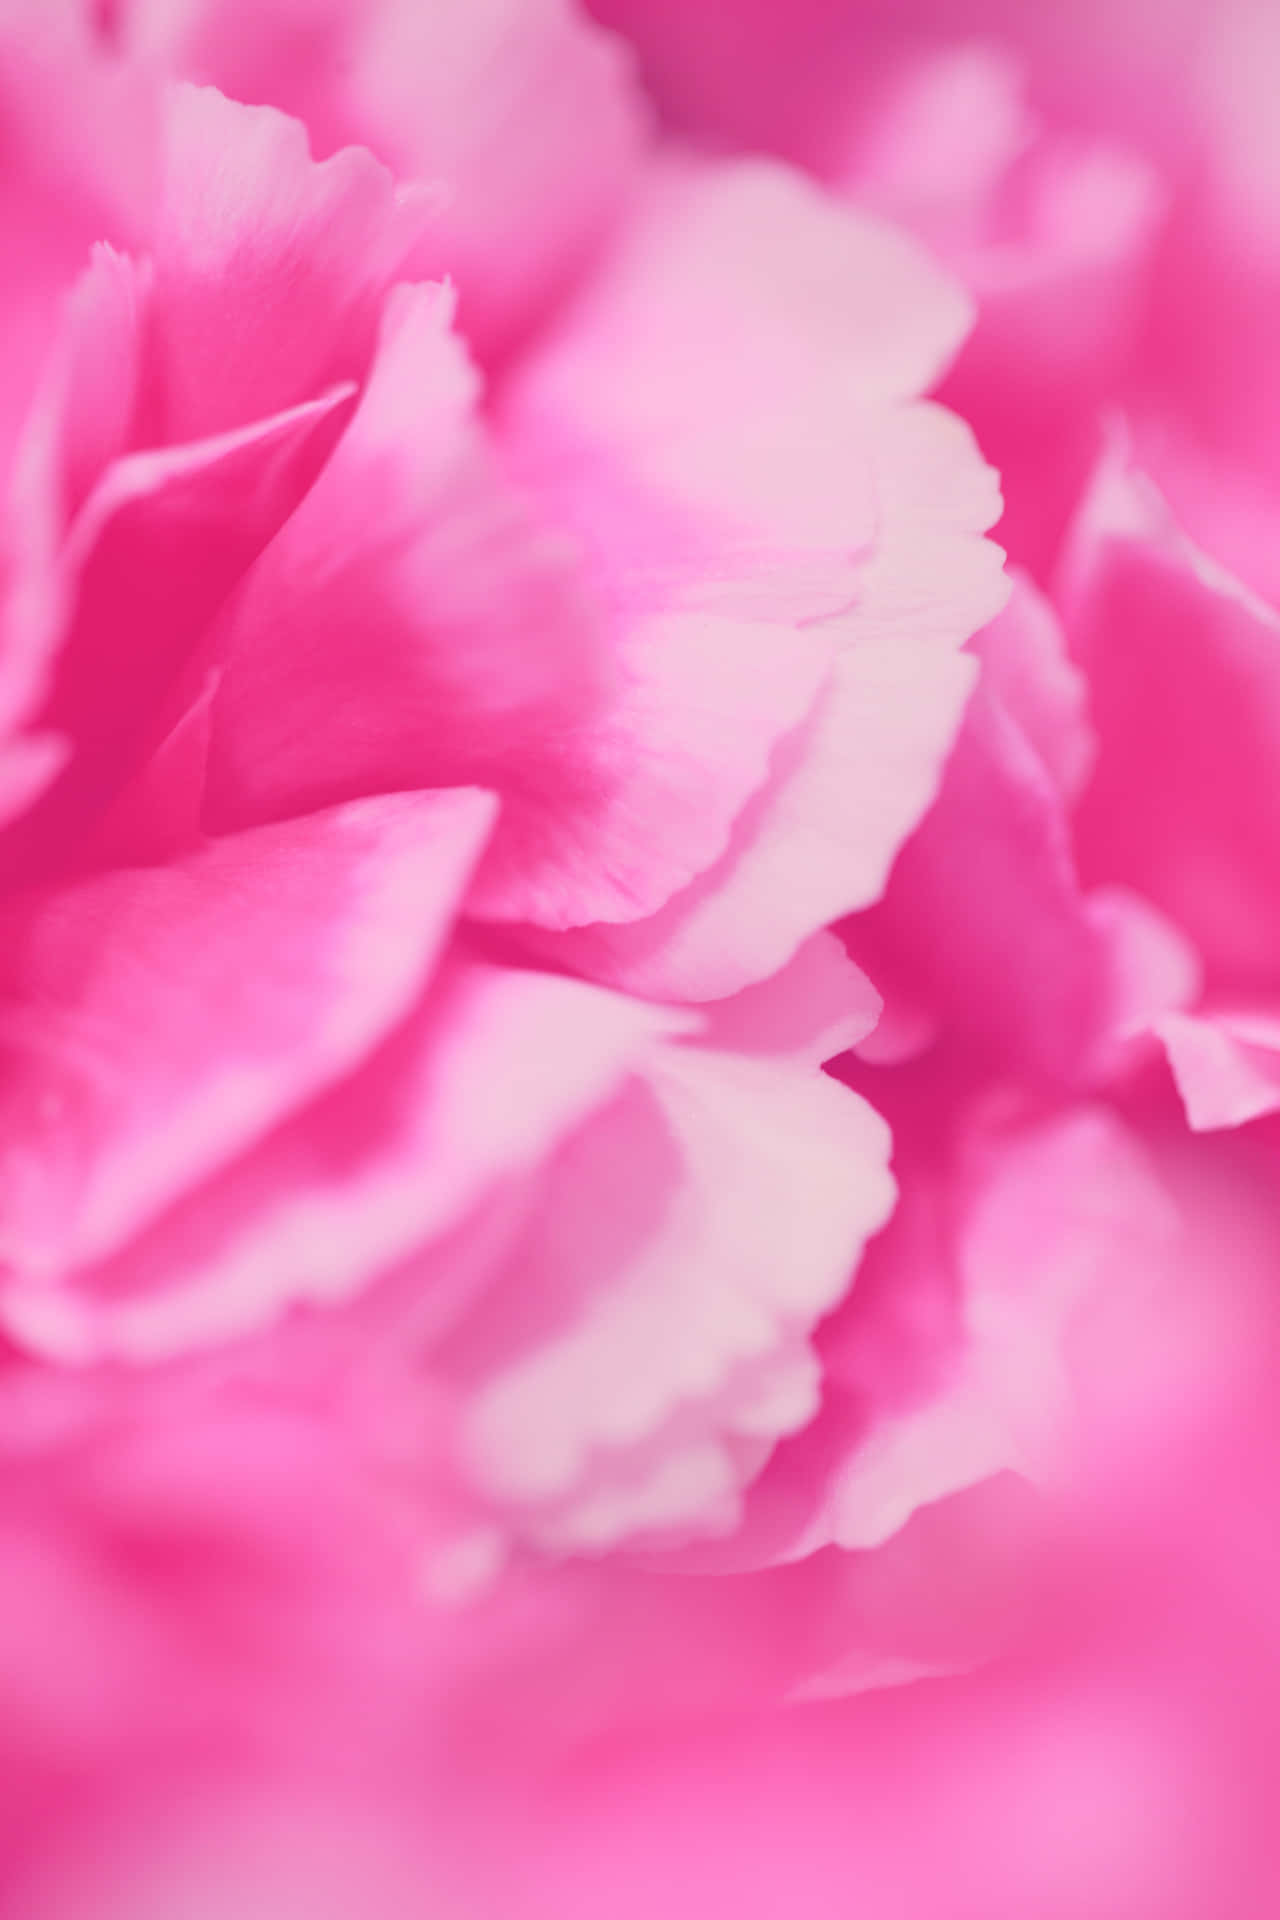 Fondode Pantalla De Color Rosa Con Pétalos De Flores